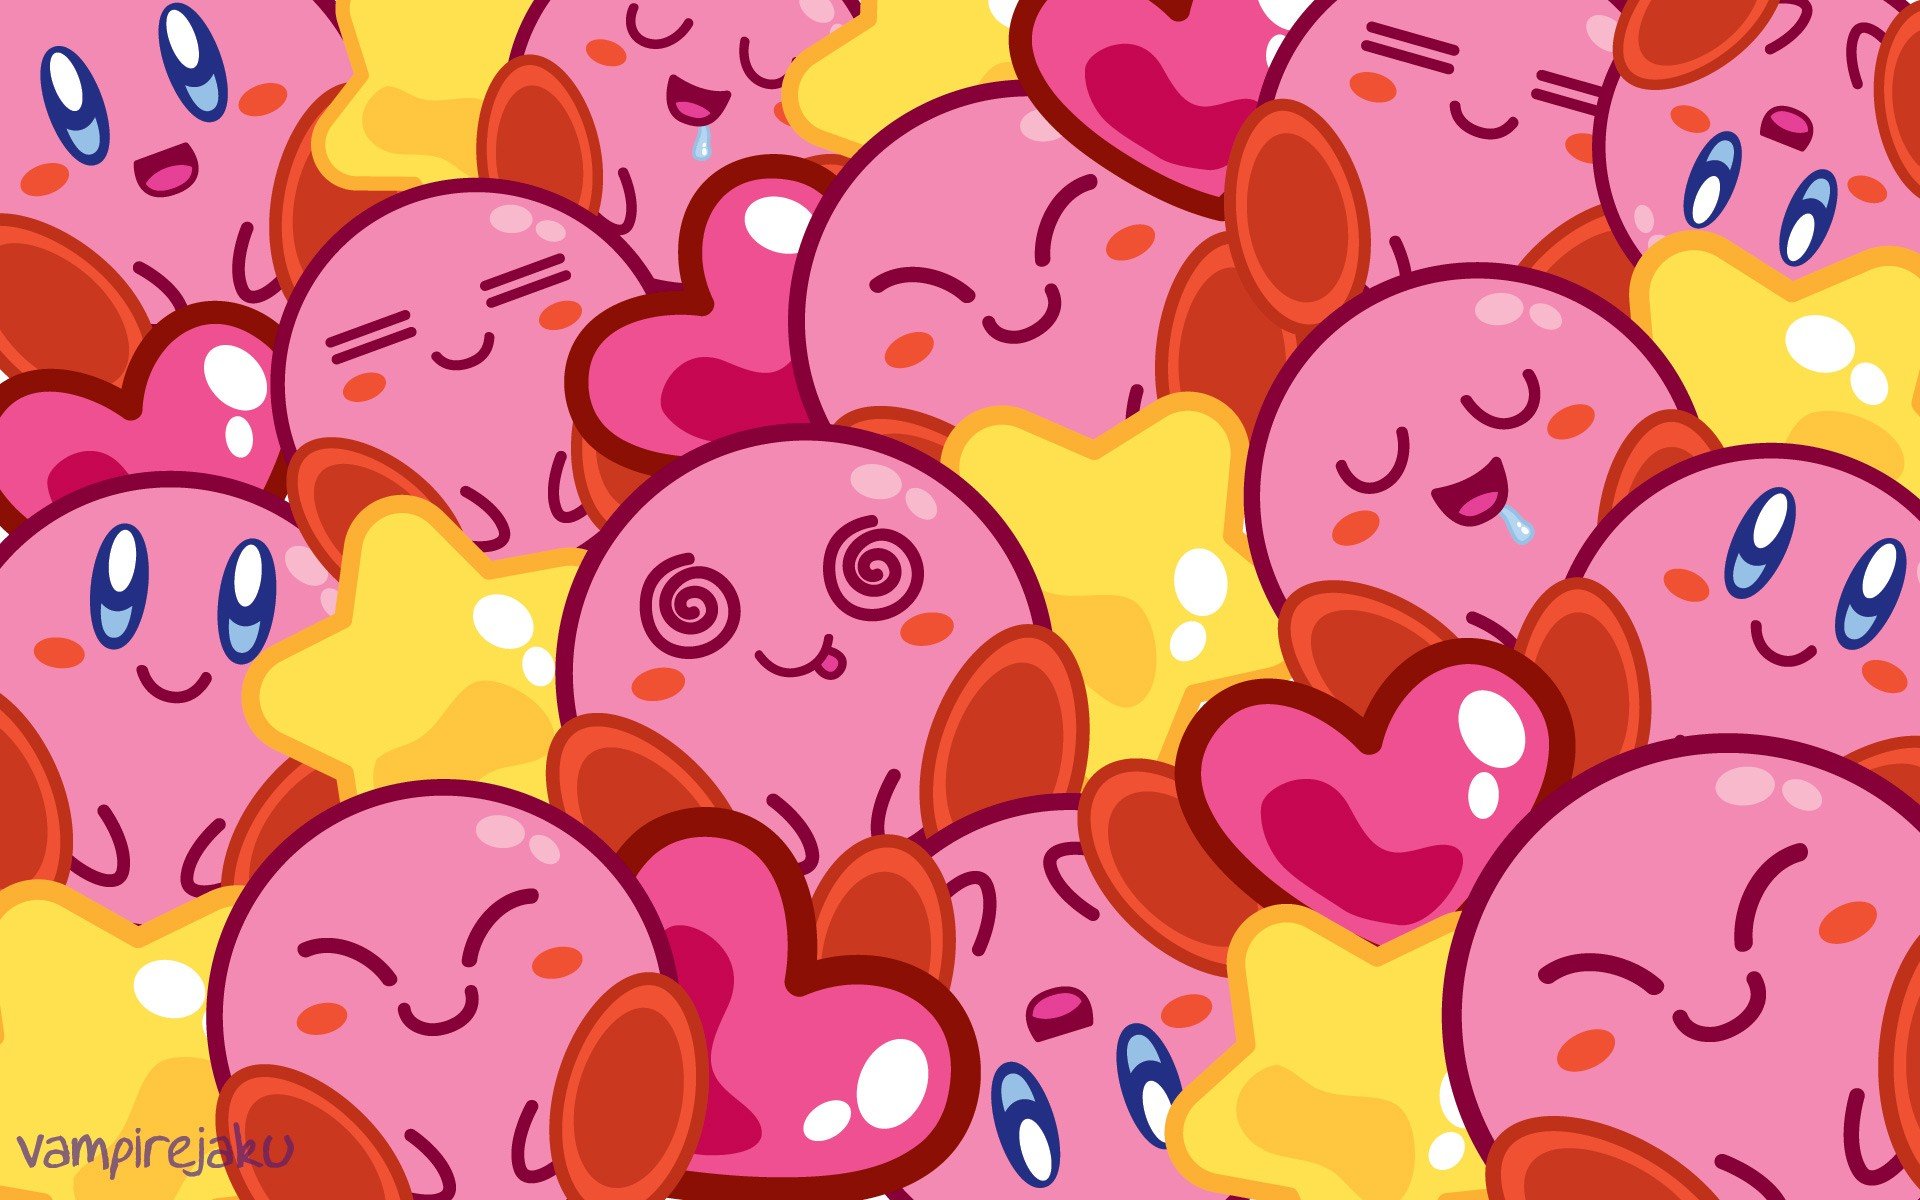 Nintendo, Kirby Wallpapers: Fan của Nintendo và Kirby không thể bỏ qua bộ ảnh nền đẹp mắt này. Các hình ảnh của Kirby đầy màu sắc cùng các nhân vật Nintendo đáng yêu khác sẽ khiến cho thiết bị của bạn trở nên sinh động và đẹp mắt hơn.